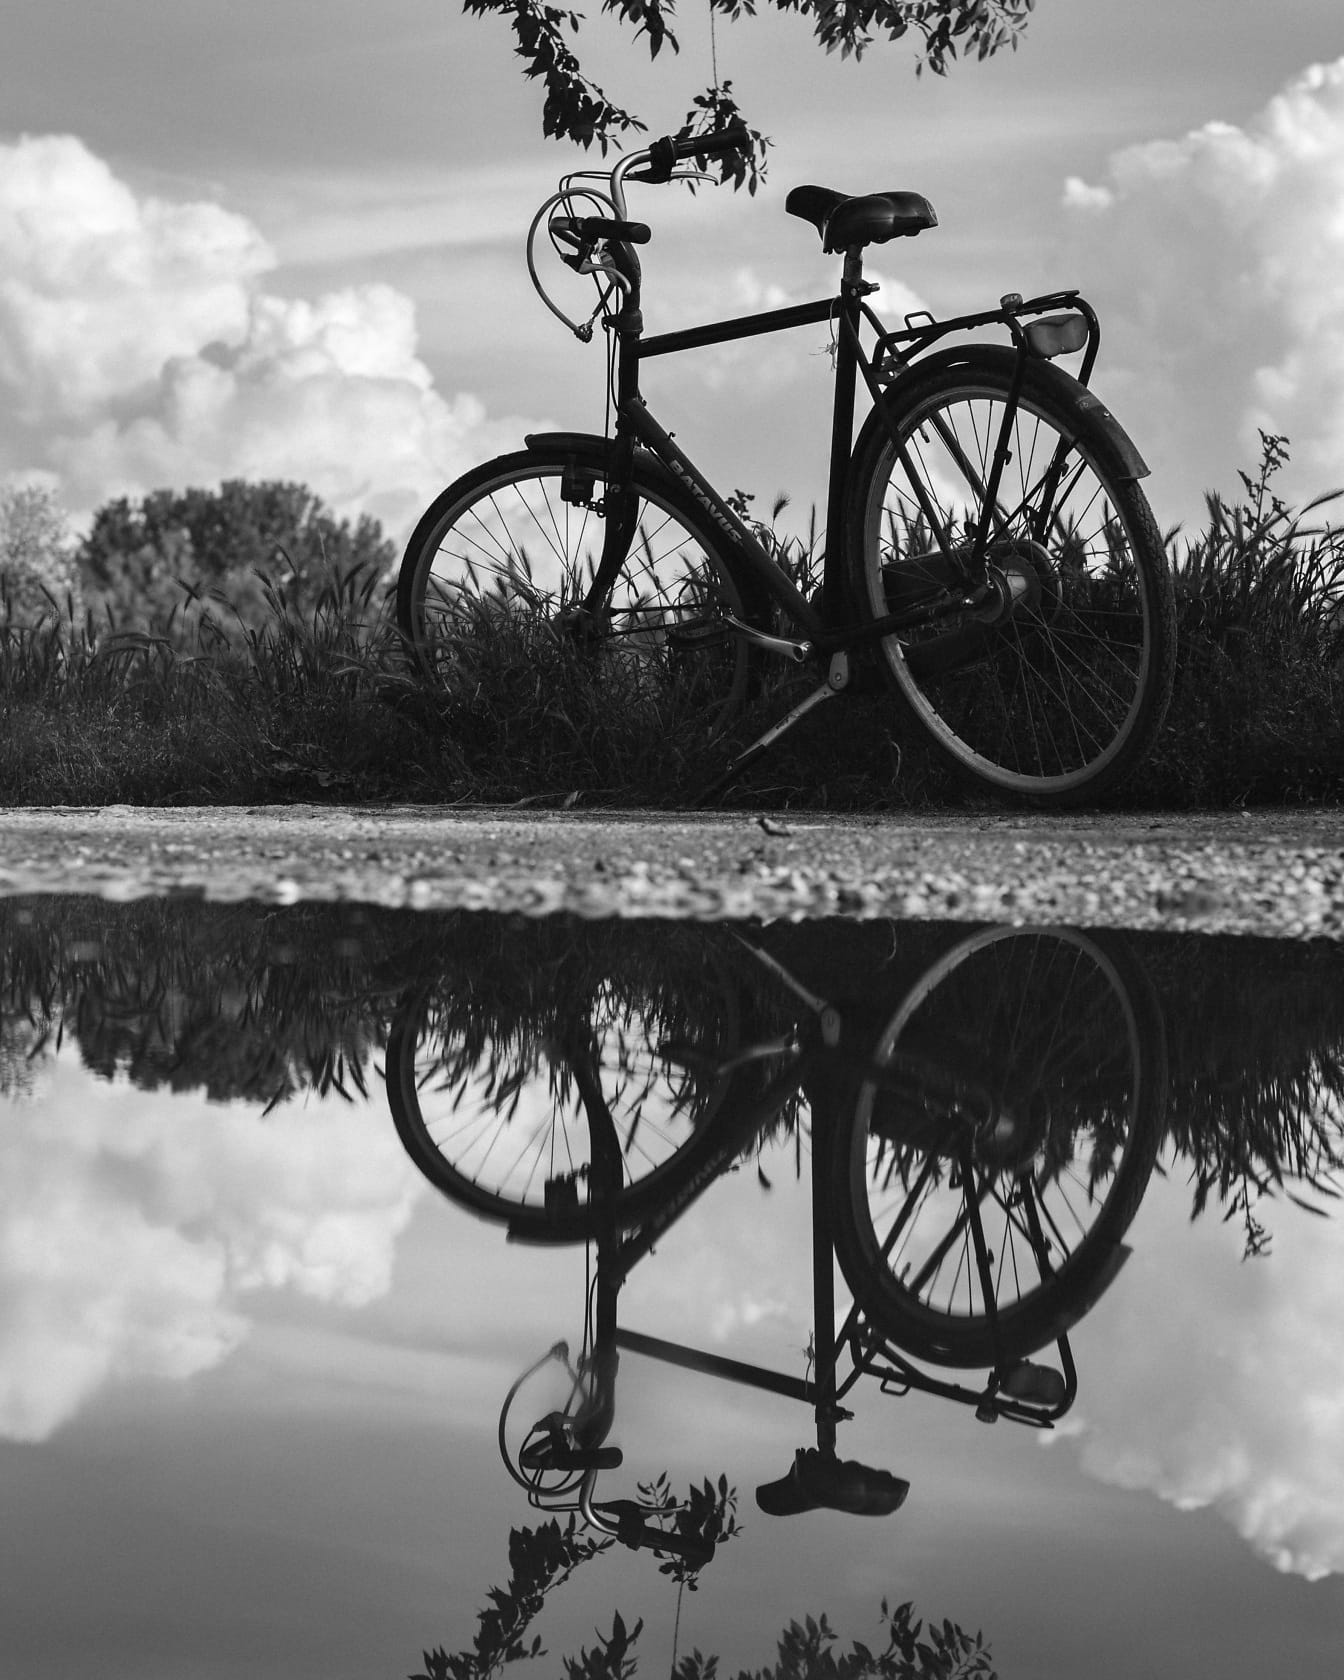 Μονόχρωμη φωτογραφία ποδηλάτου σε επαρχιακό δρόμο με αντανάκλαση στο νερό